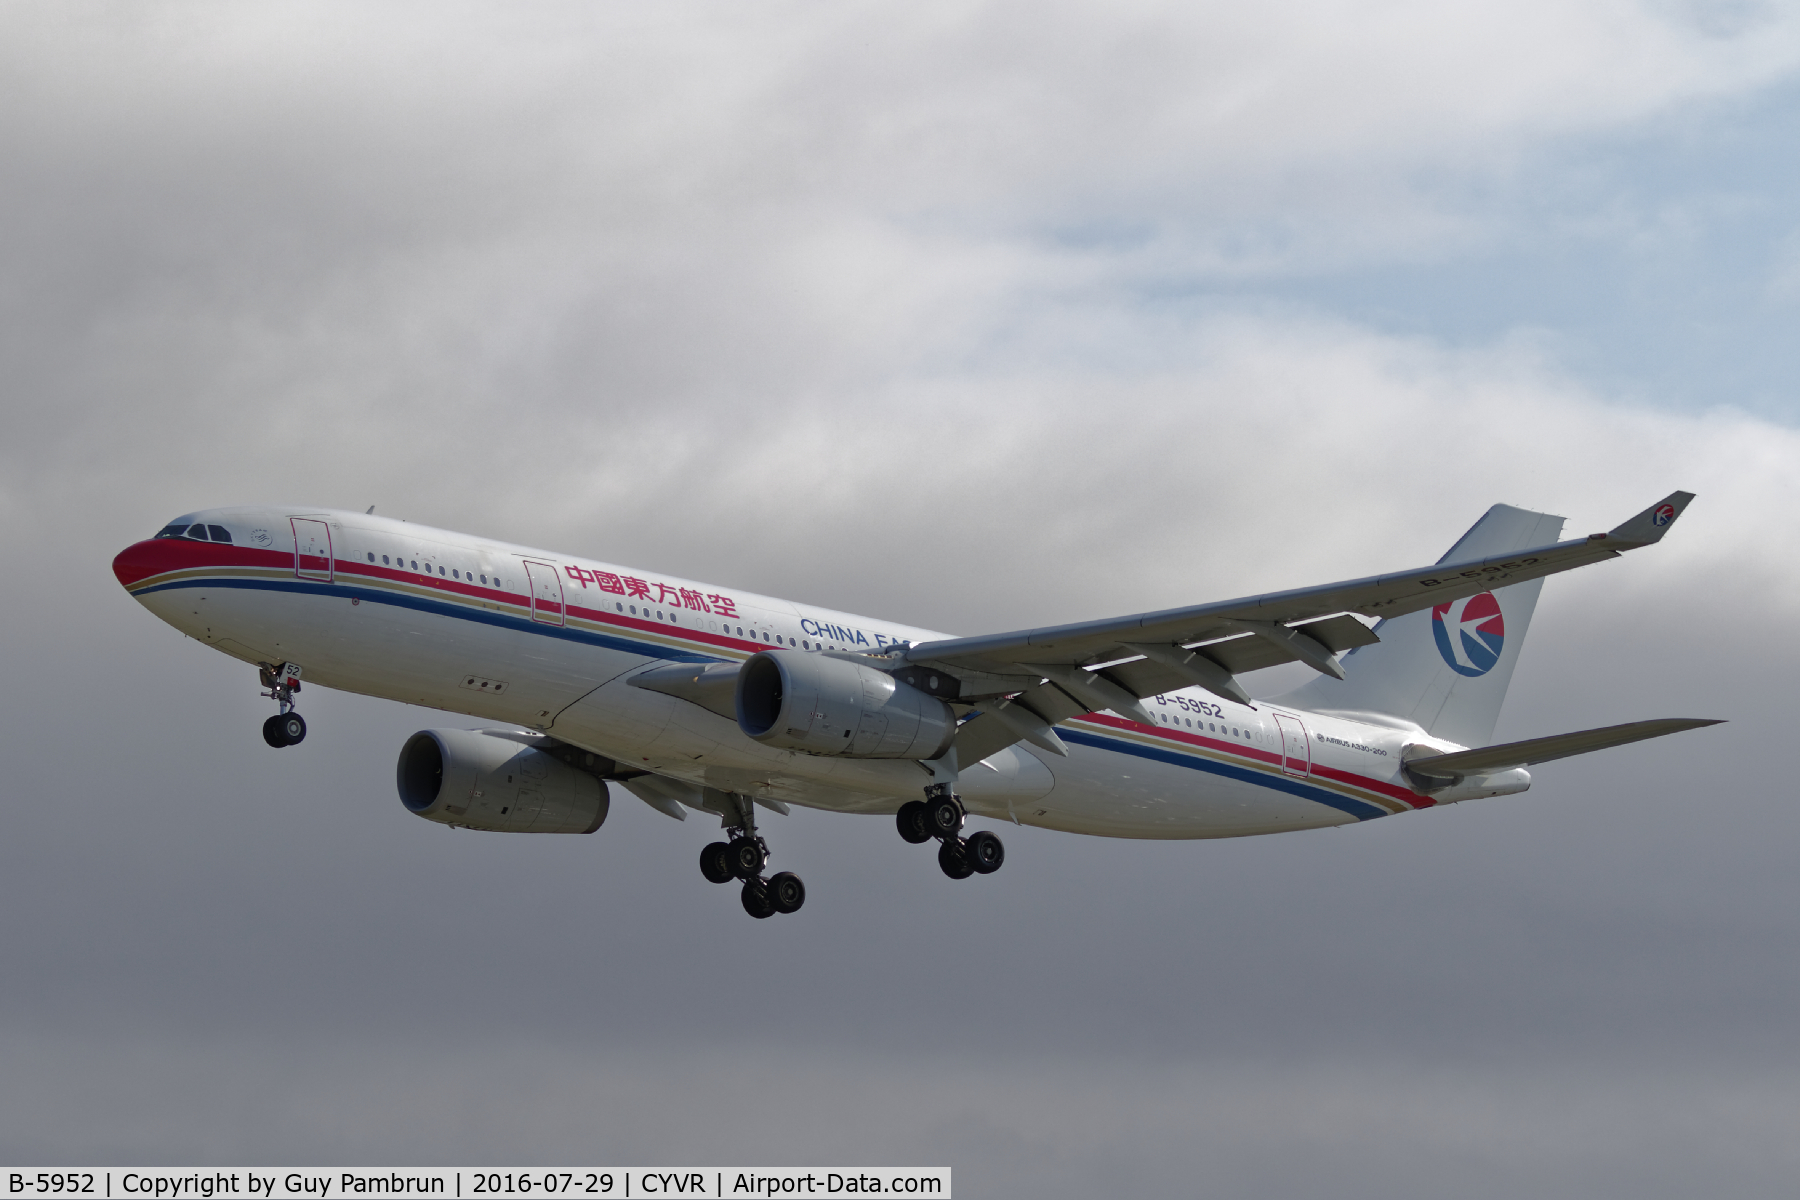 B-5952, 2014 Airbus A330-243 C/N 1547, Landing